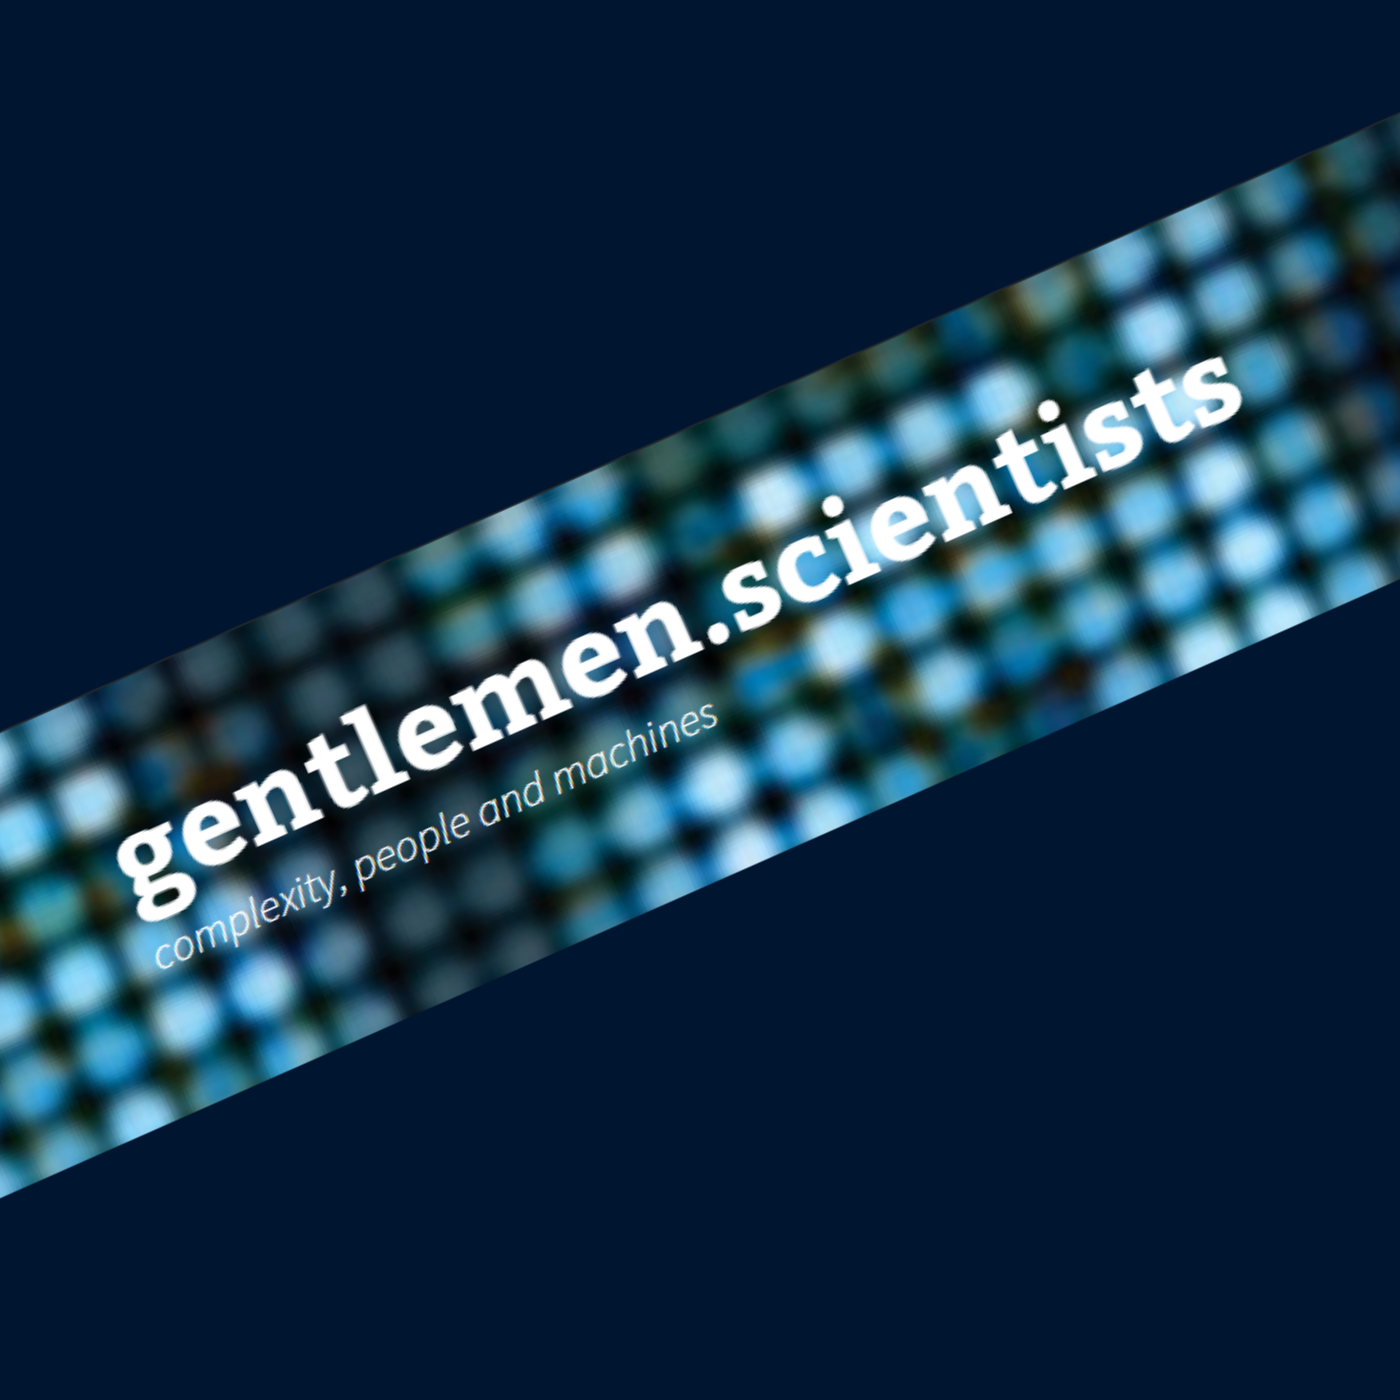 podcast – gentlemen.scientists